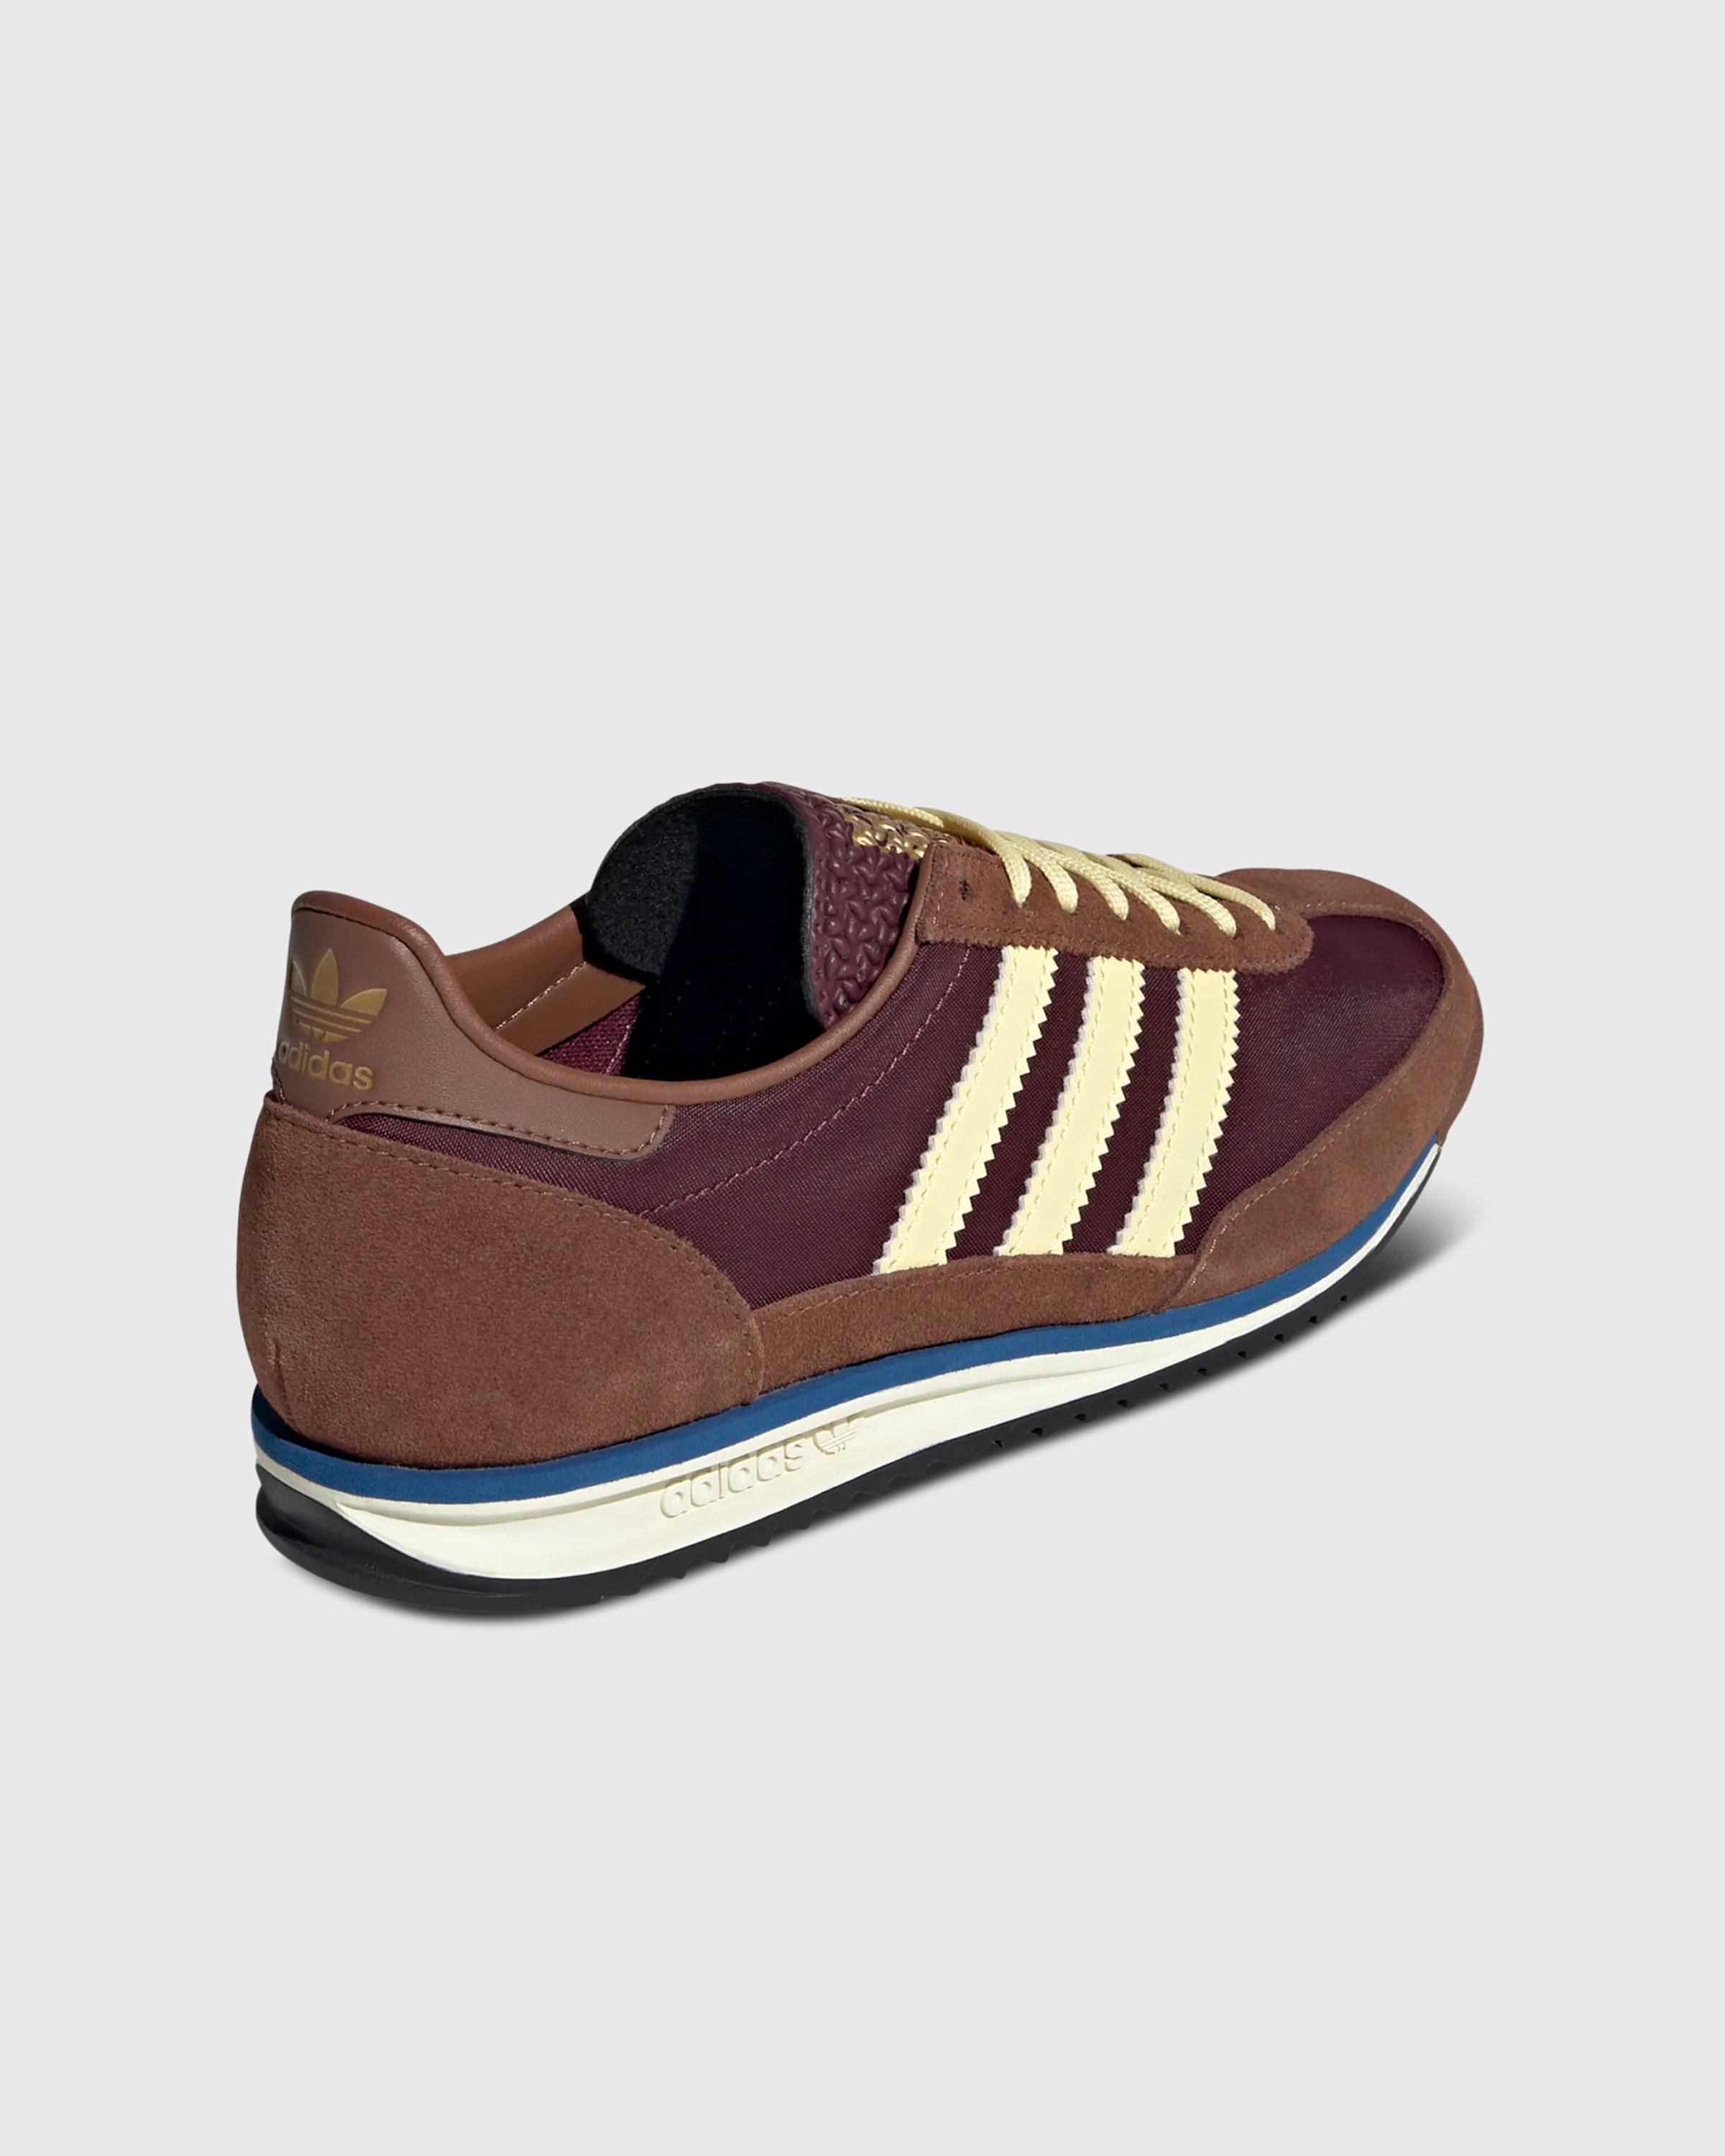 Adidas - SL 72 OG W          MAROON/ALMYEL/PREBRN - Footwear - Brown - Image 4